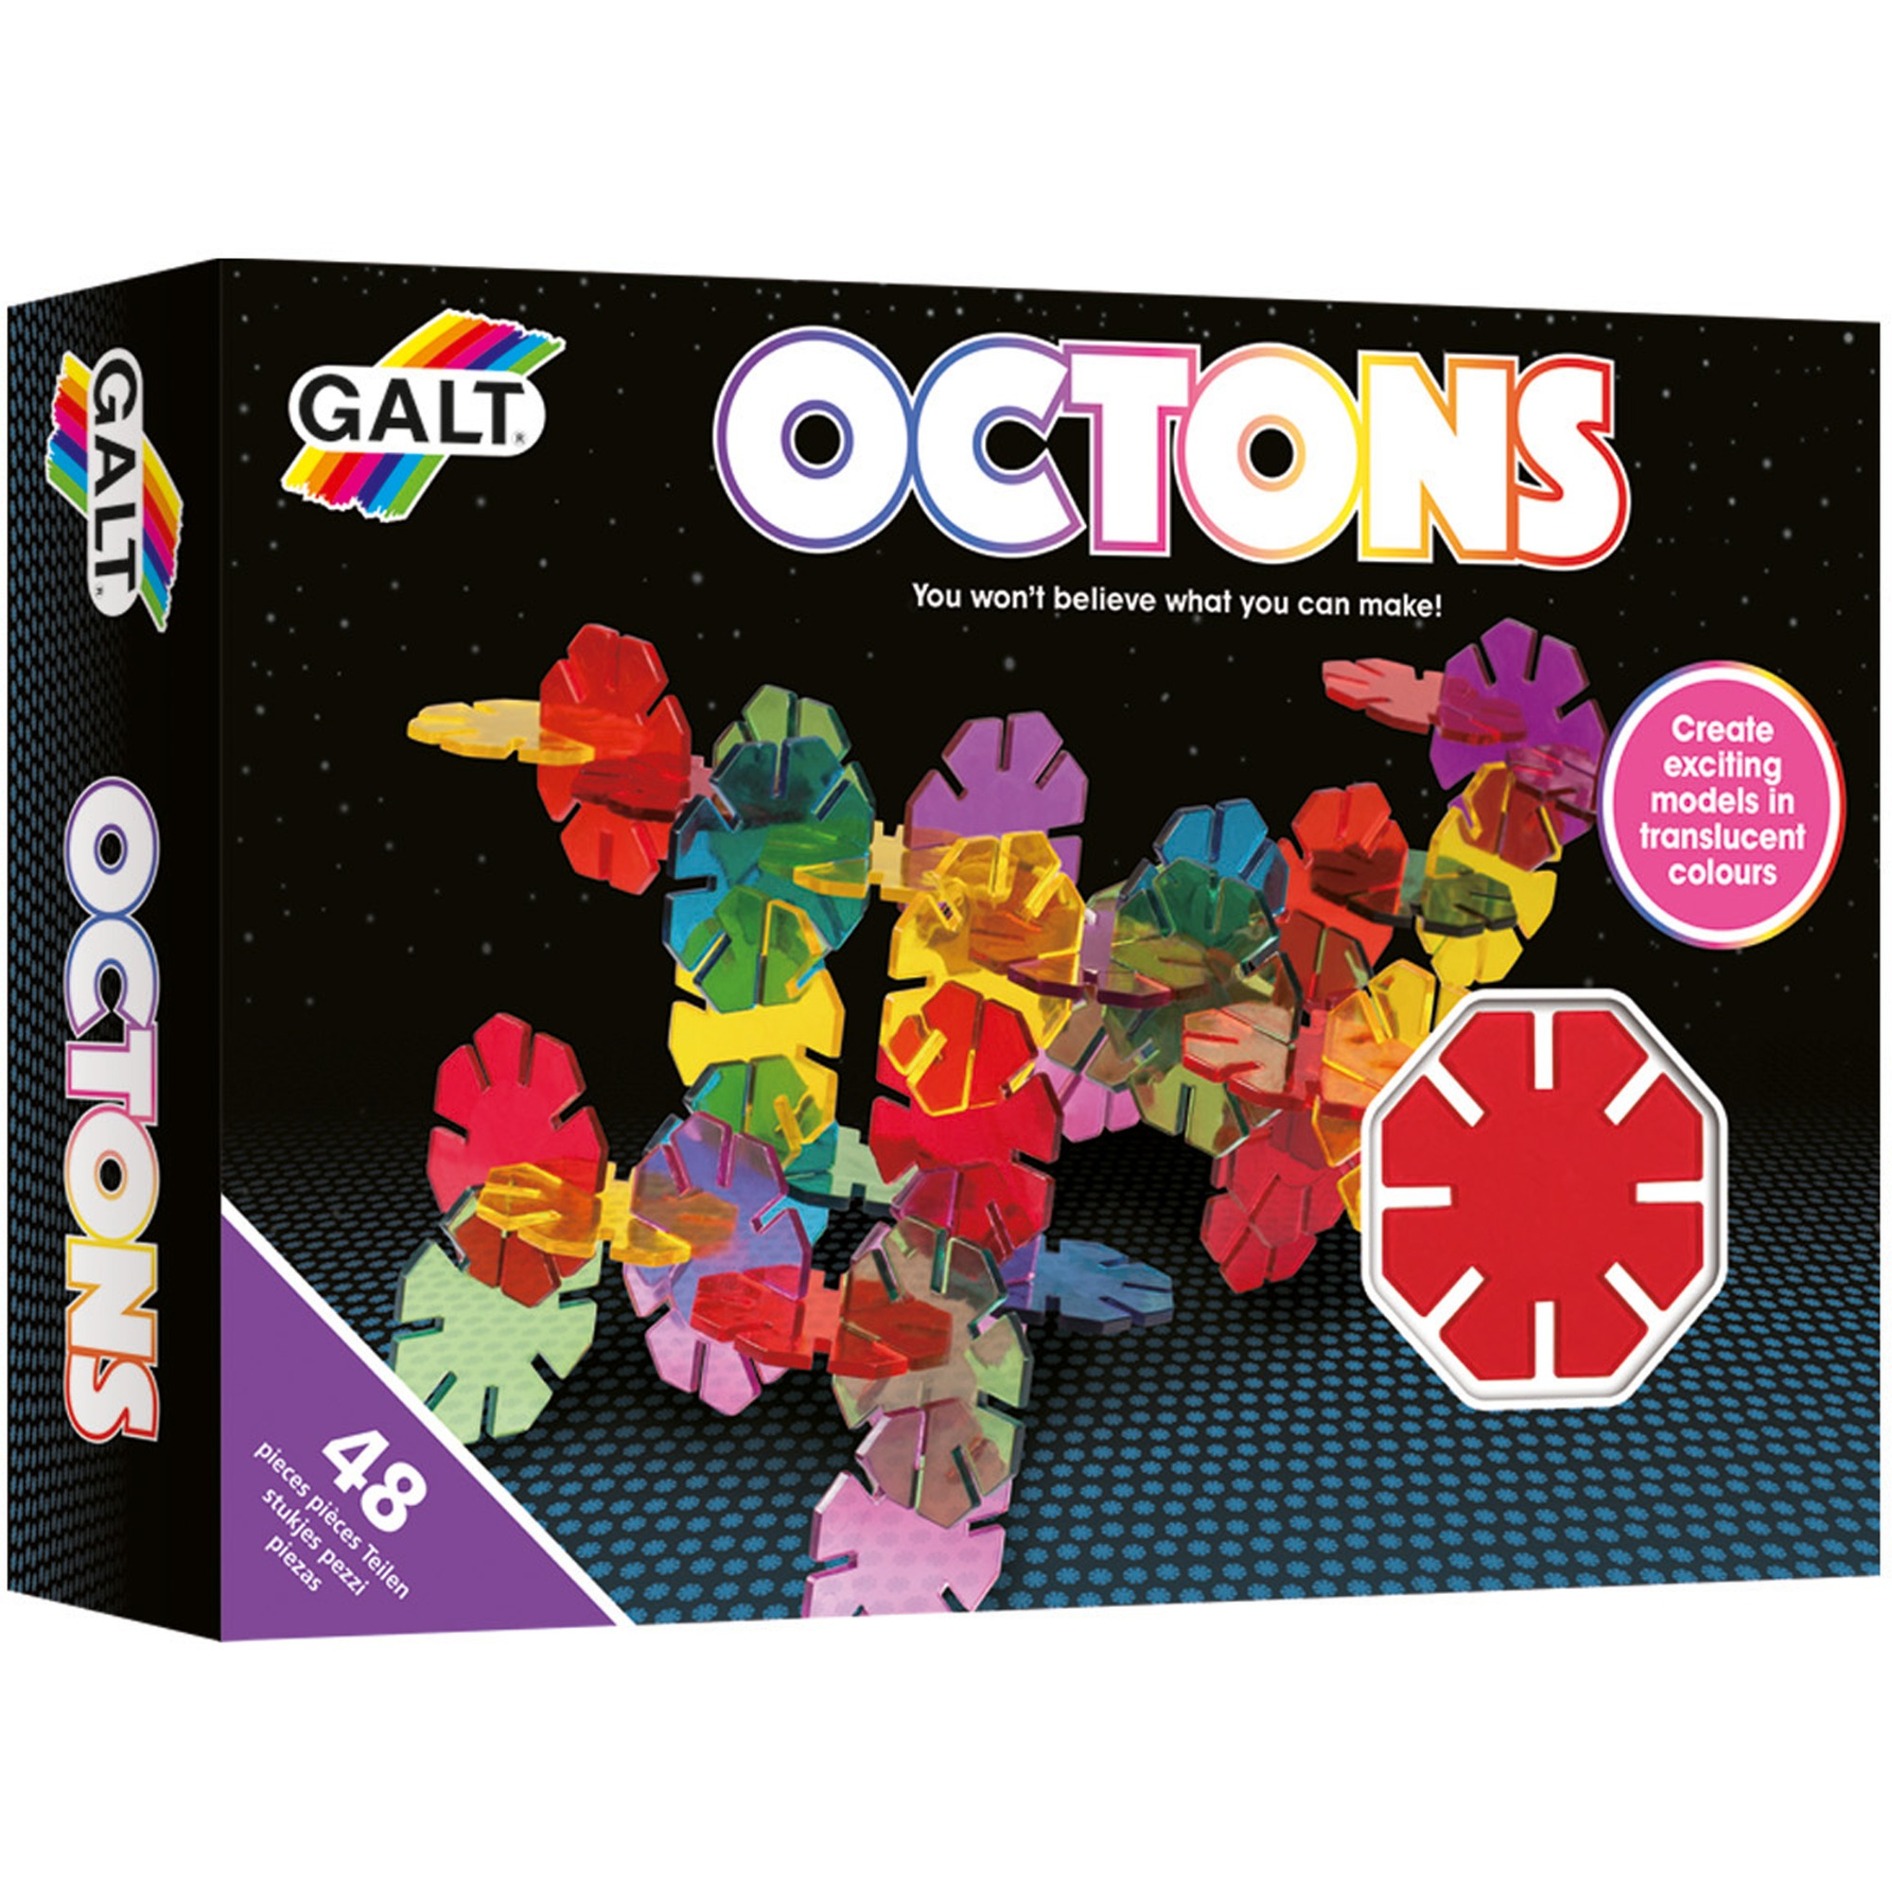 Image of Alternate - Octons, Konstruktionsspielzeug online einkaufen bei Alternate